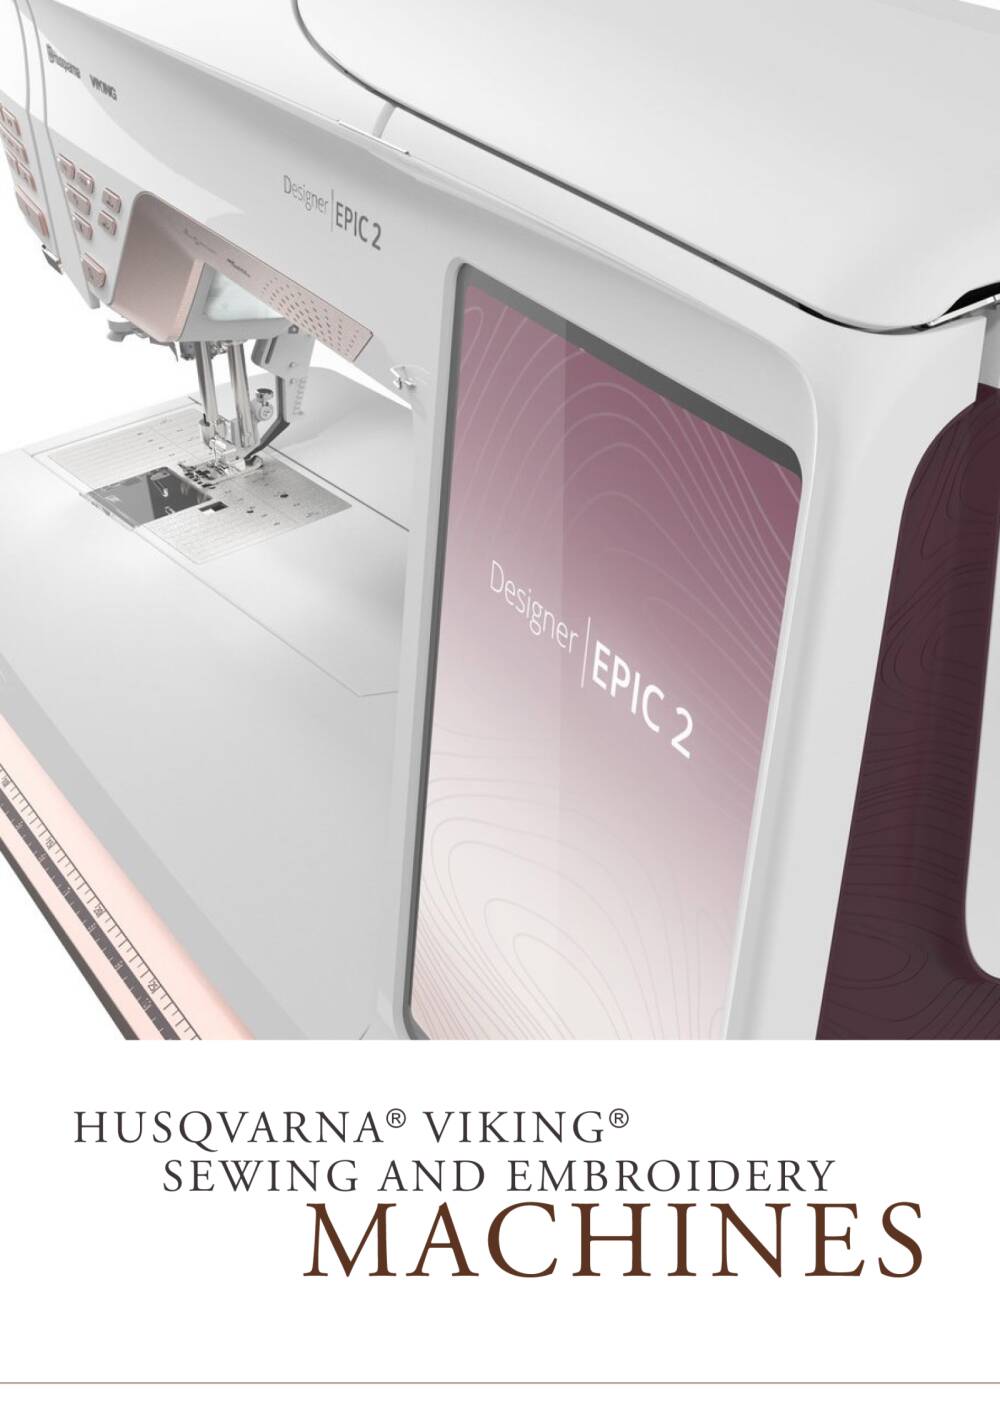 Husqvarna Viking Emerald 118 Sewing Machine